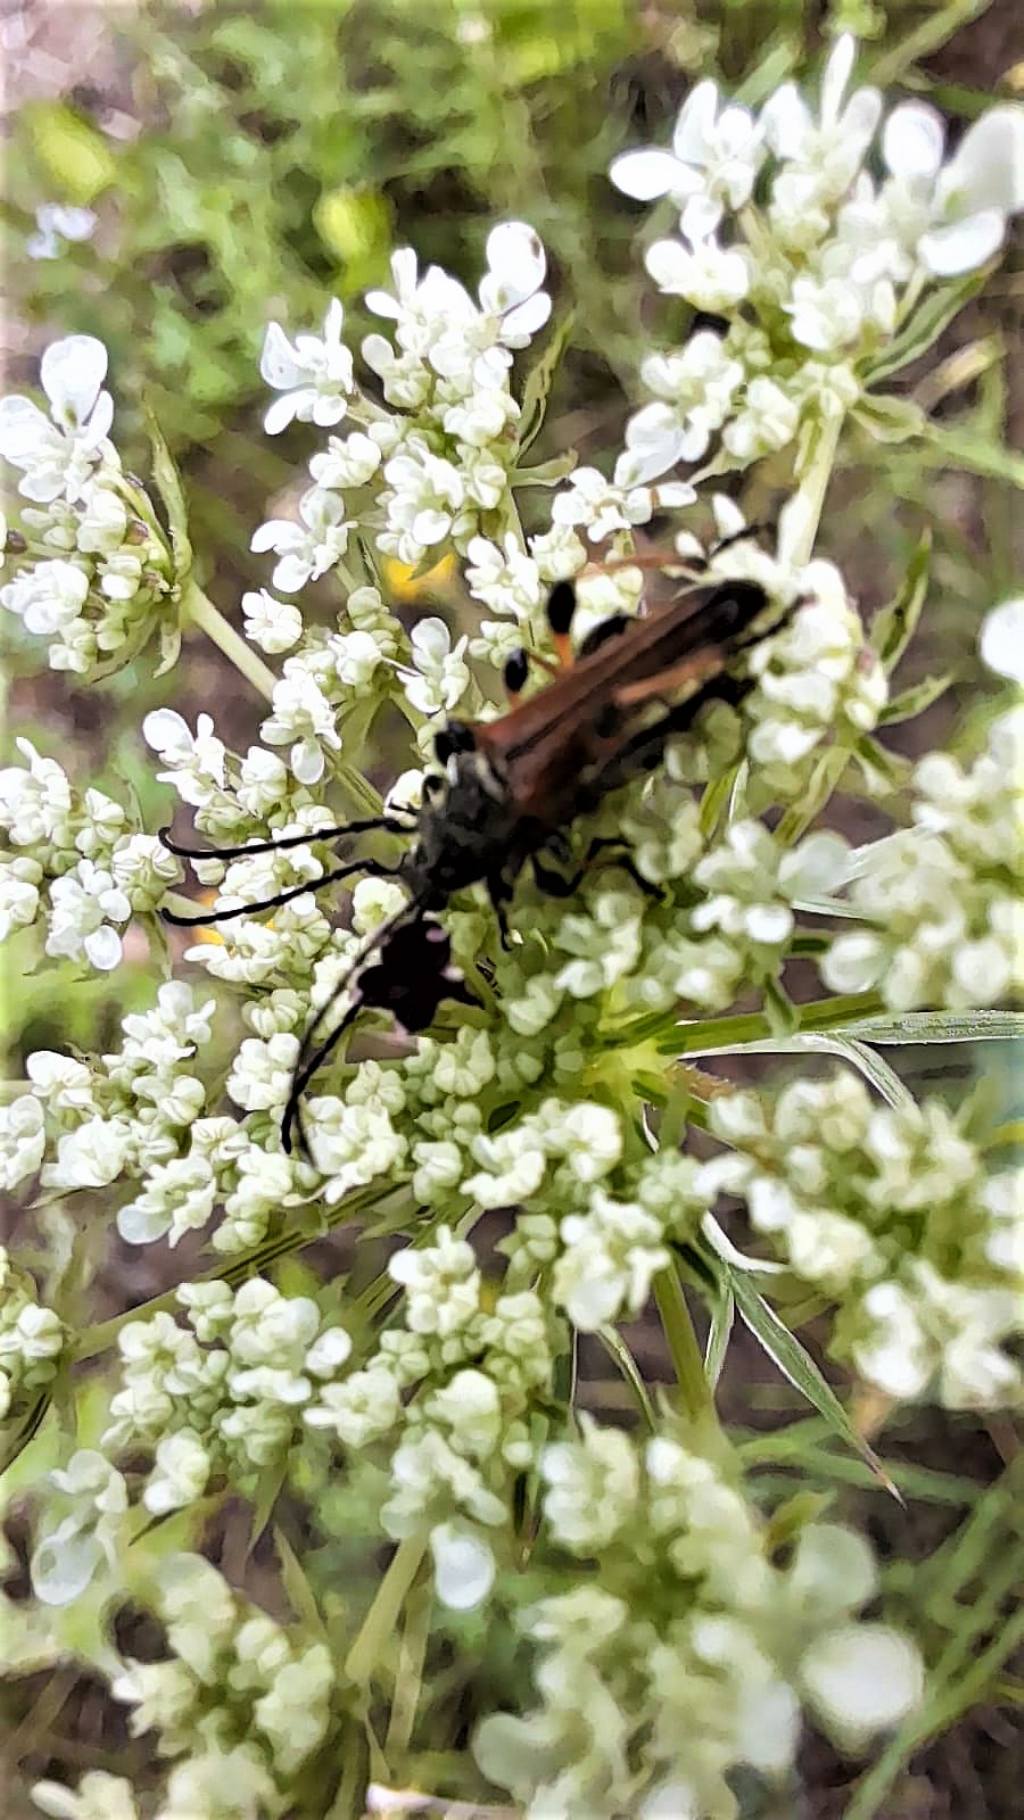 Stenopterus ater (Cerambycidae)